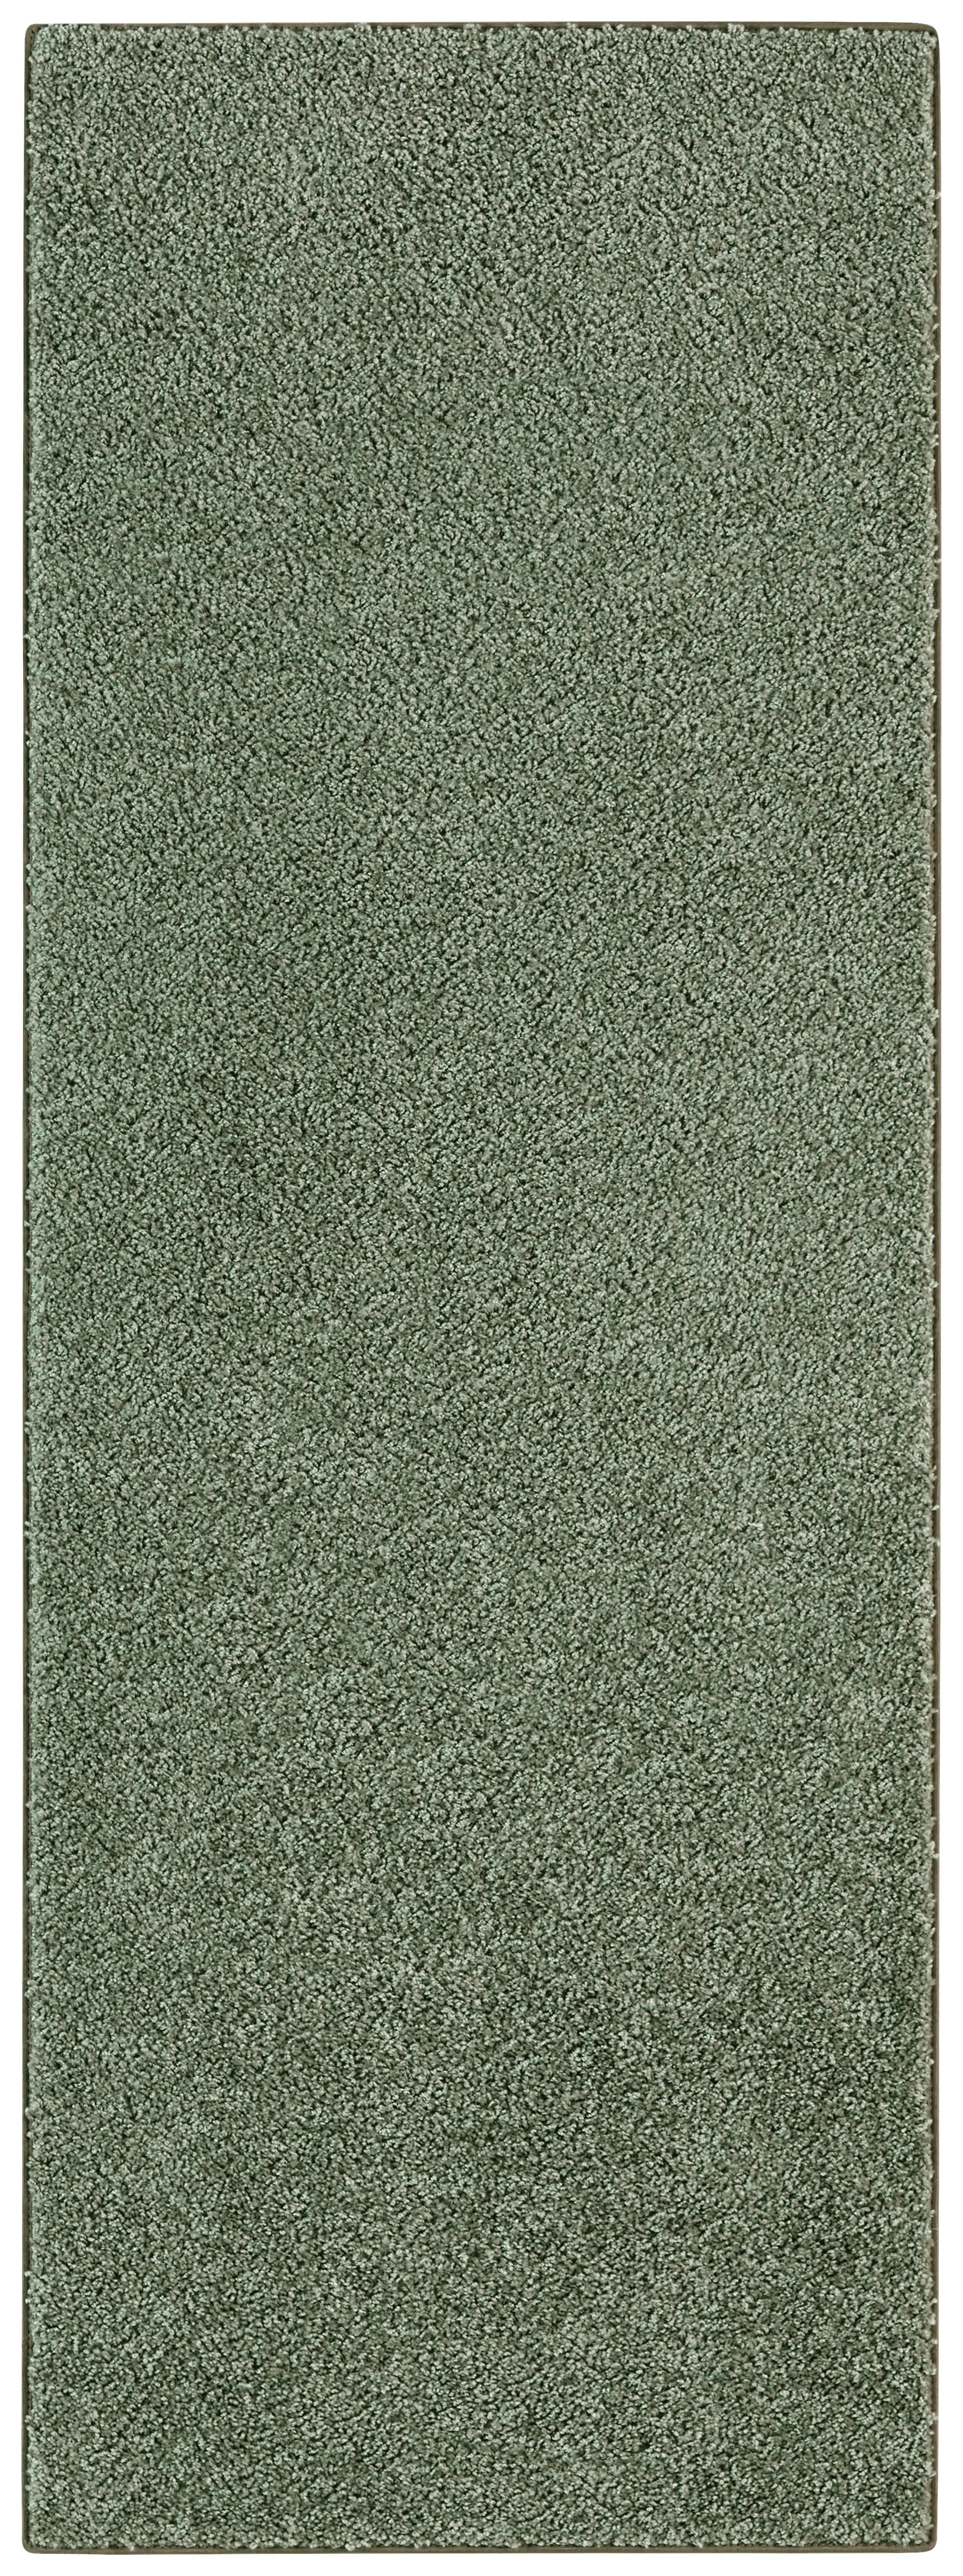 Teppich Tampa grün B/L: ca. 67x180 cm Tampa - grün (67,00/180,00cm)